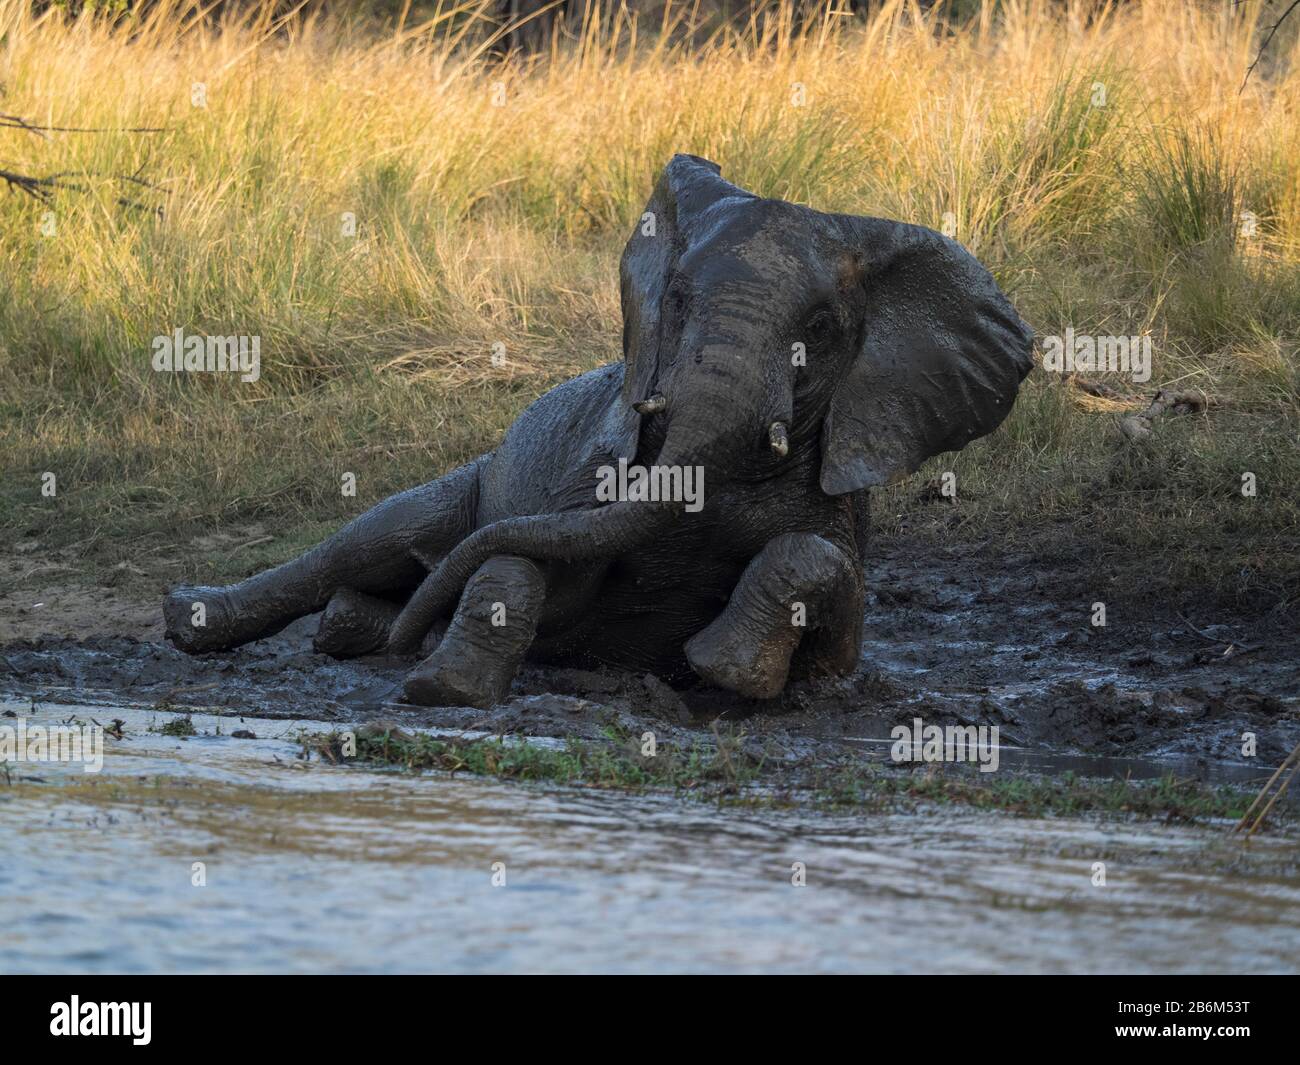 Elephant taking mud bath, Zambezi River, Livingstone, Zambia Stock Photo